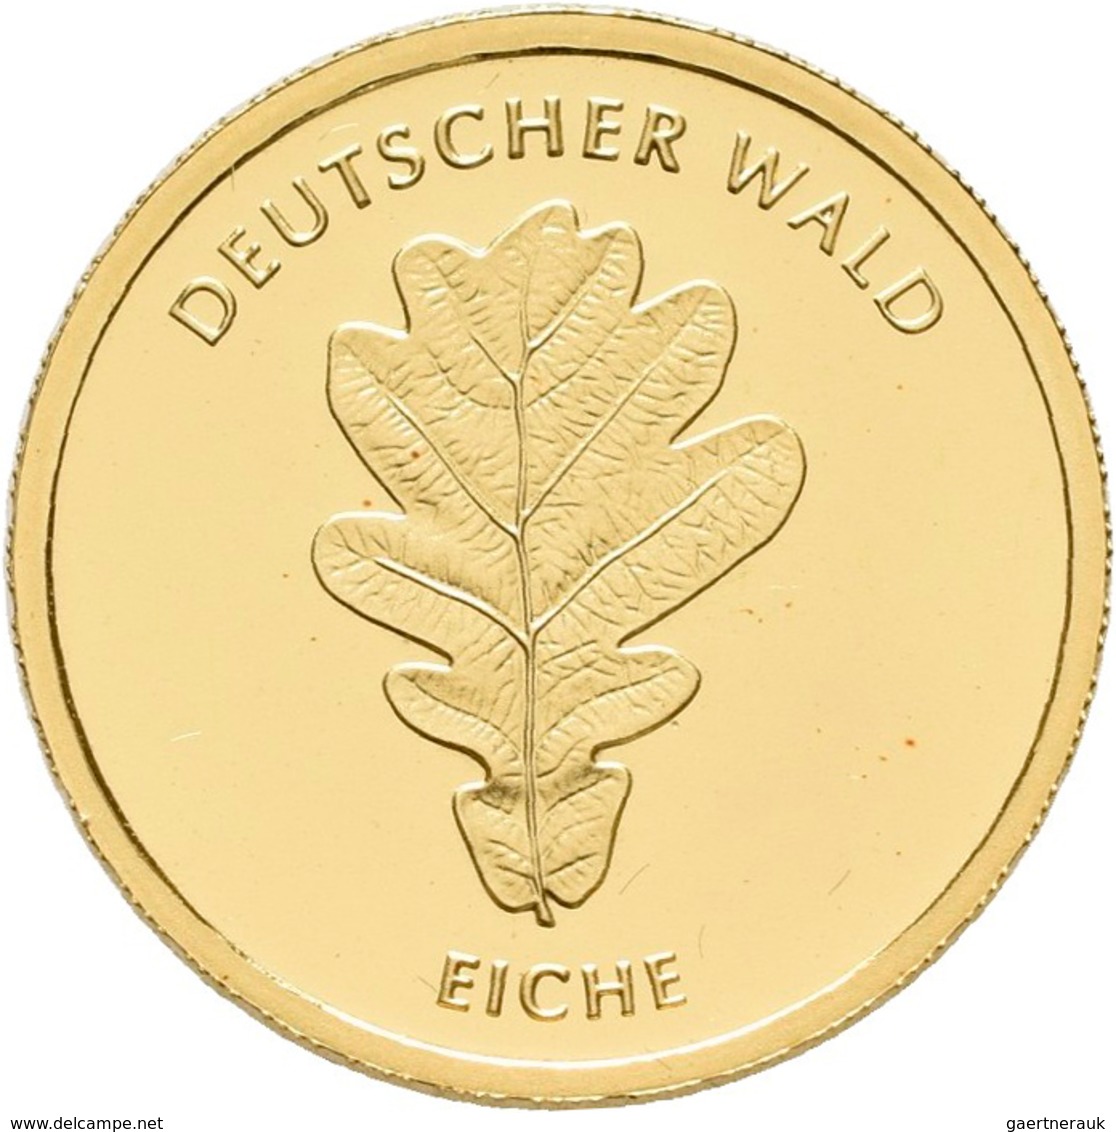 Deutschland - Anlagegold: 20 Euro 2010 Eiche A - Berlin. Serie Deutscher Wald. Jaeger 552. 3,89 G, 9 - Deutschland